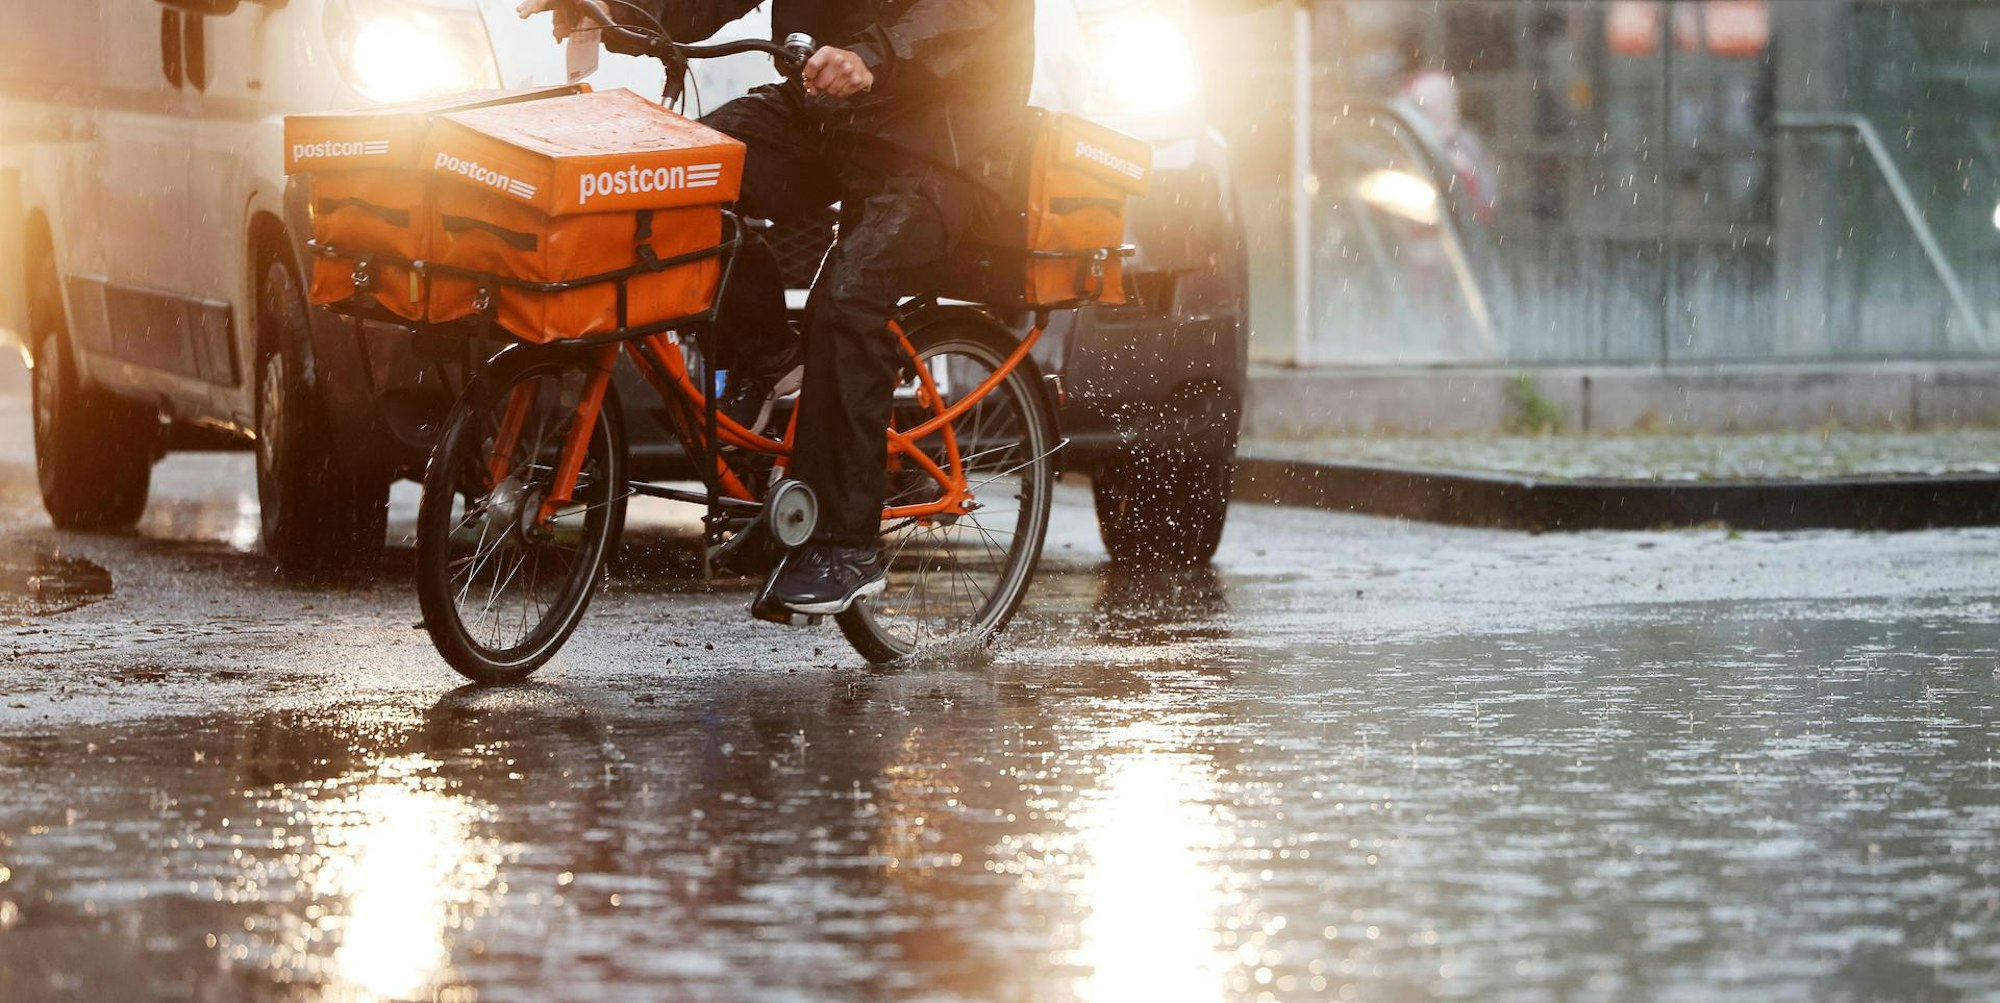 Ein Postbote fährt mit seinem Fahrrad über eine regennasse Straße. Im Hintergrund ist ein Transporter mit Scheinwerfern zu sehen. (Symbolbild)